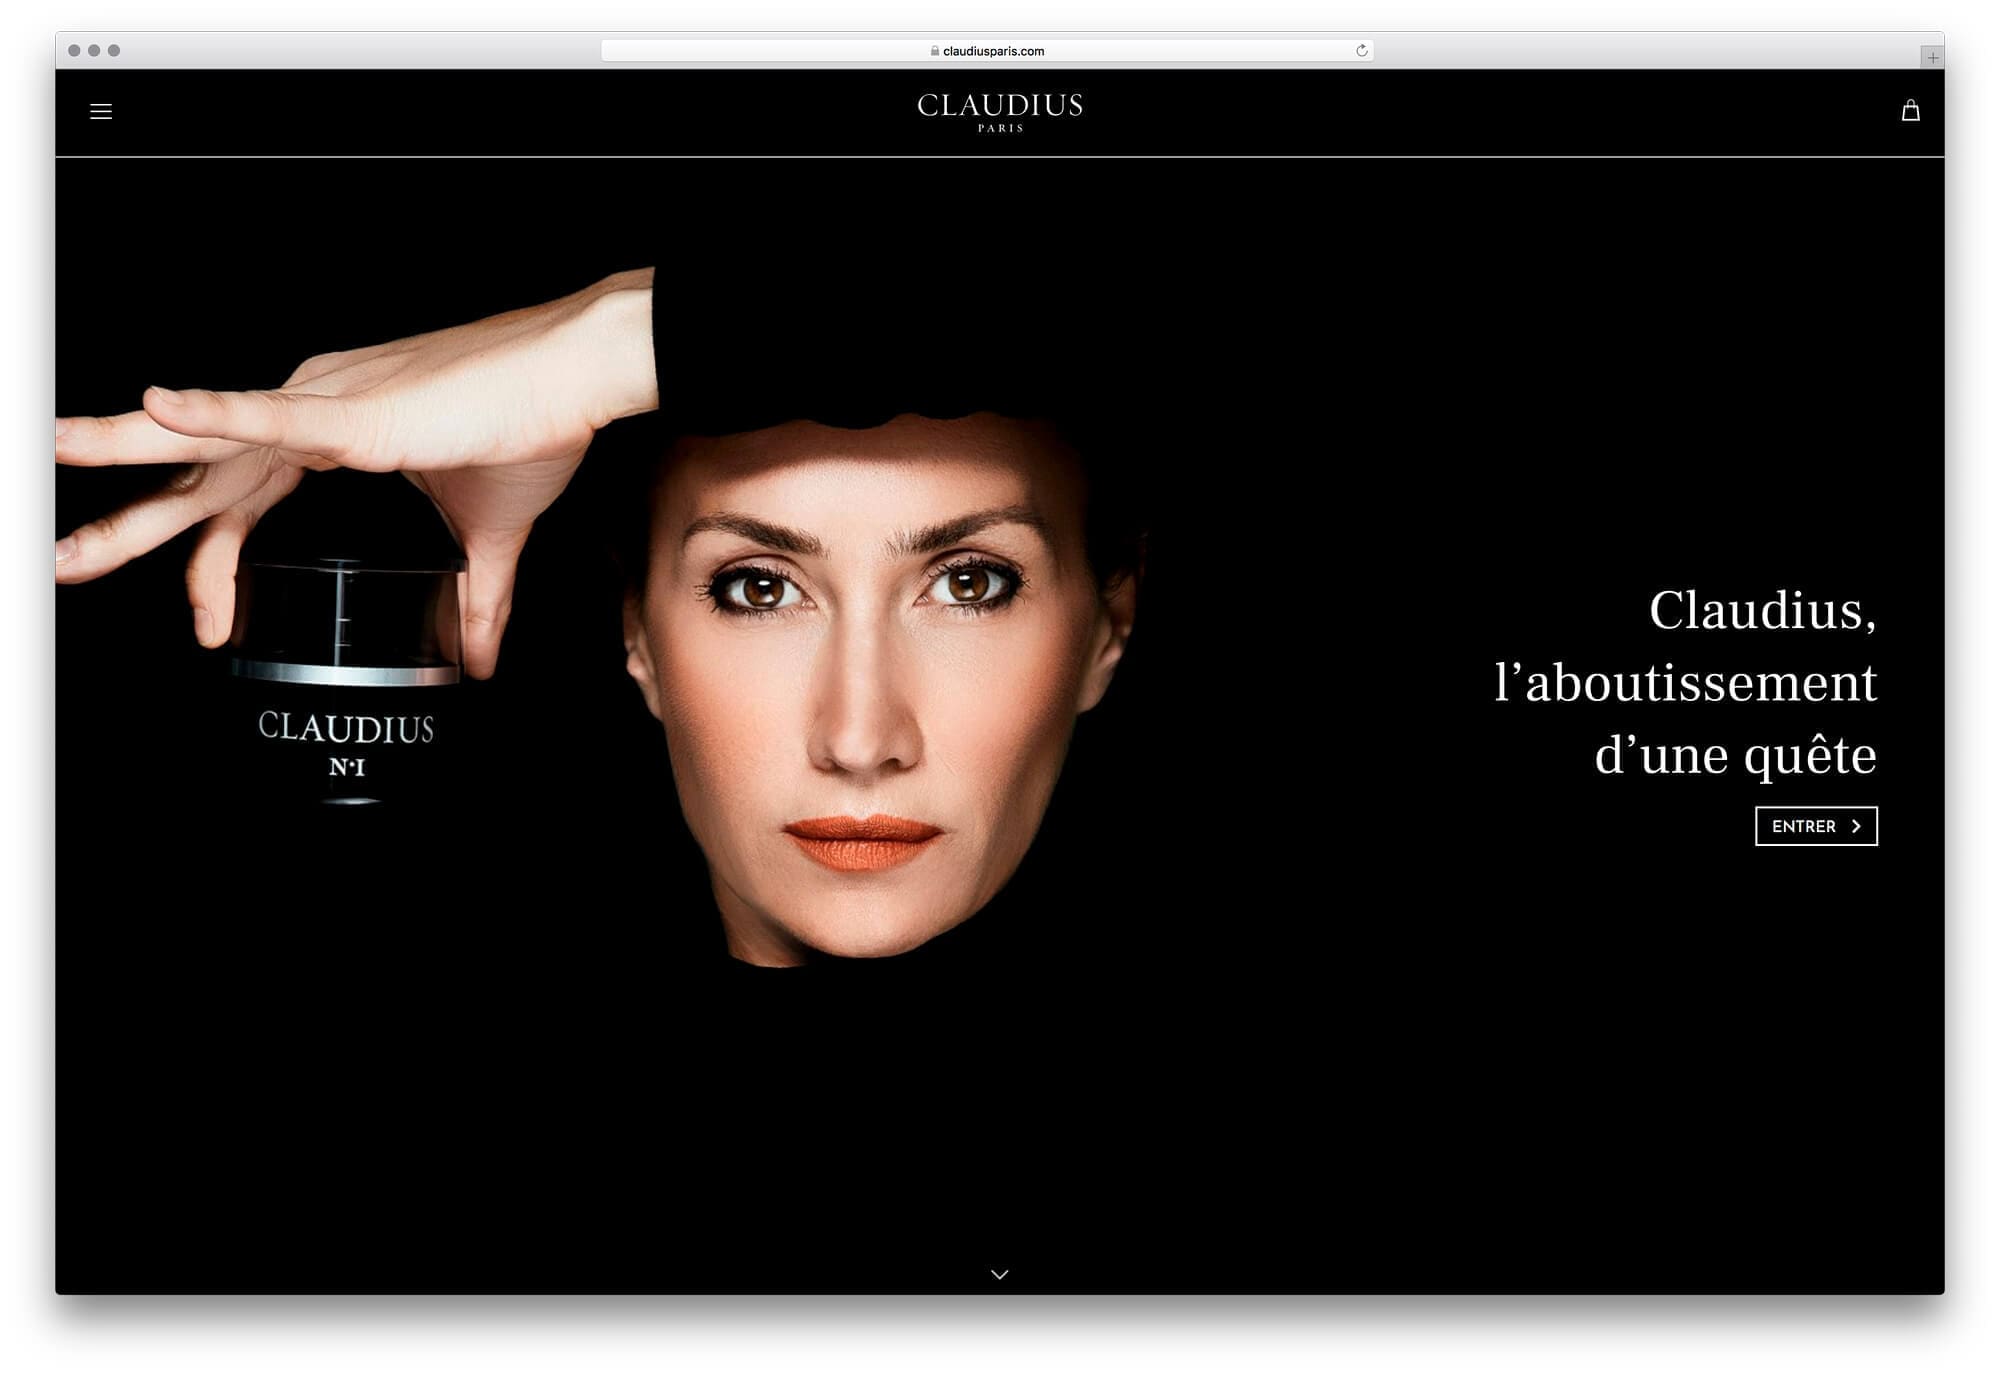 Site internet de Claudius, page d'accueil sur histoire la marque et de sa fondatrice Sophie Guillou, design par Ichekar